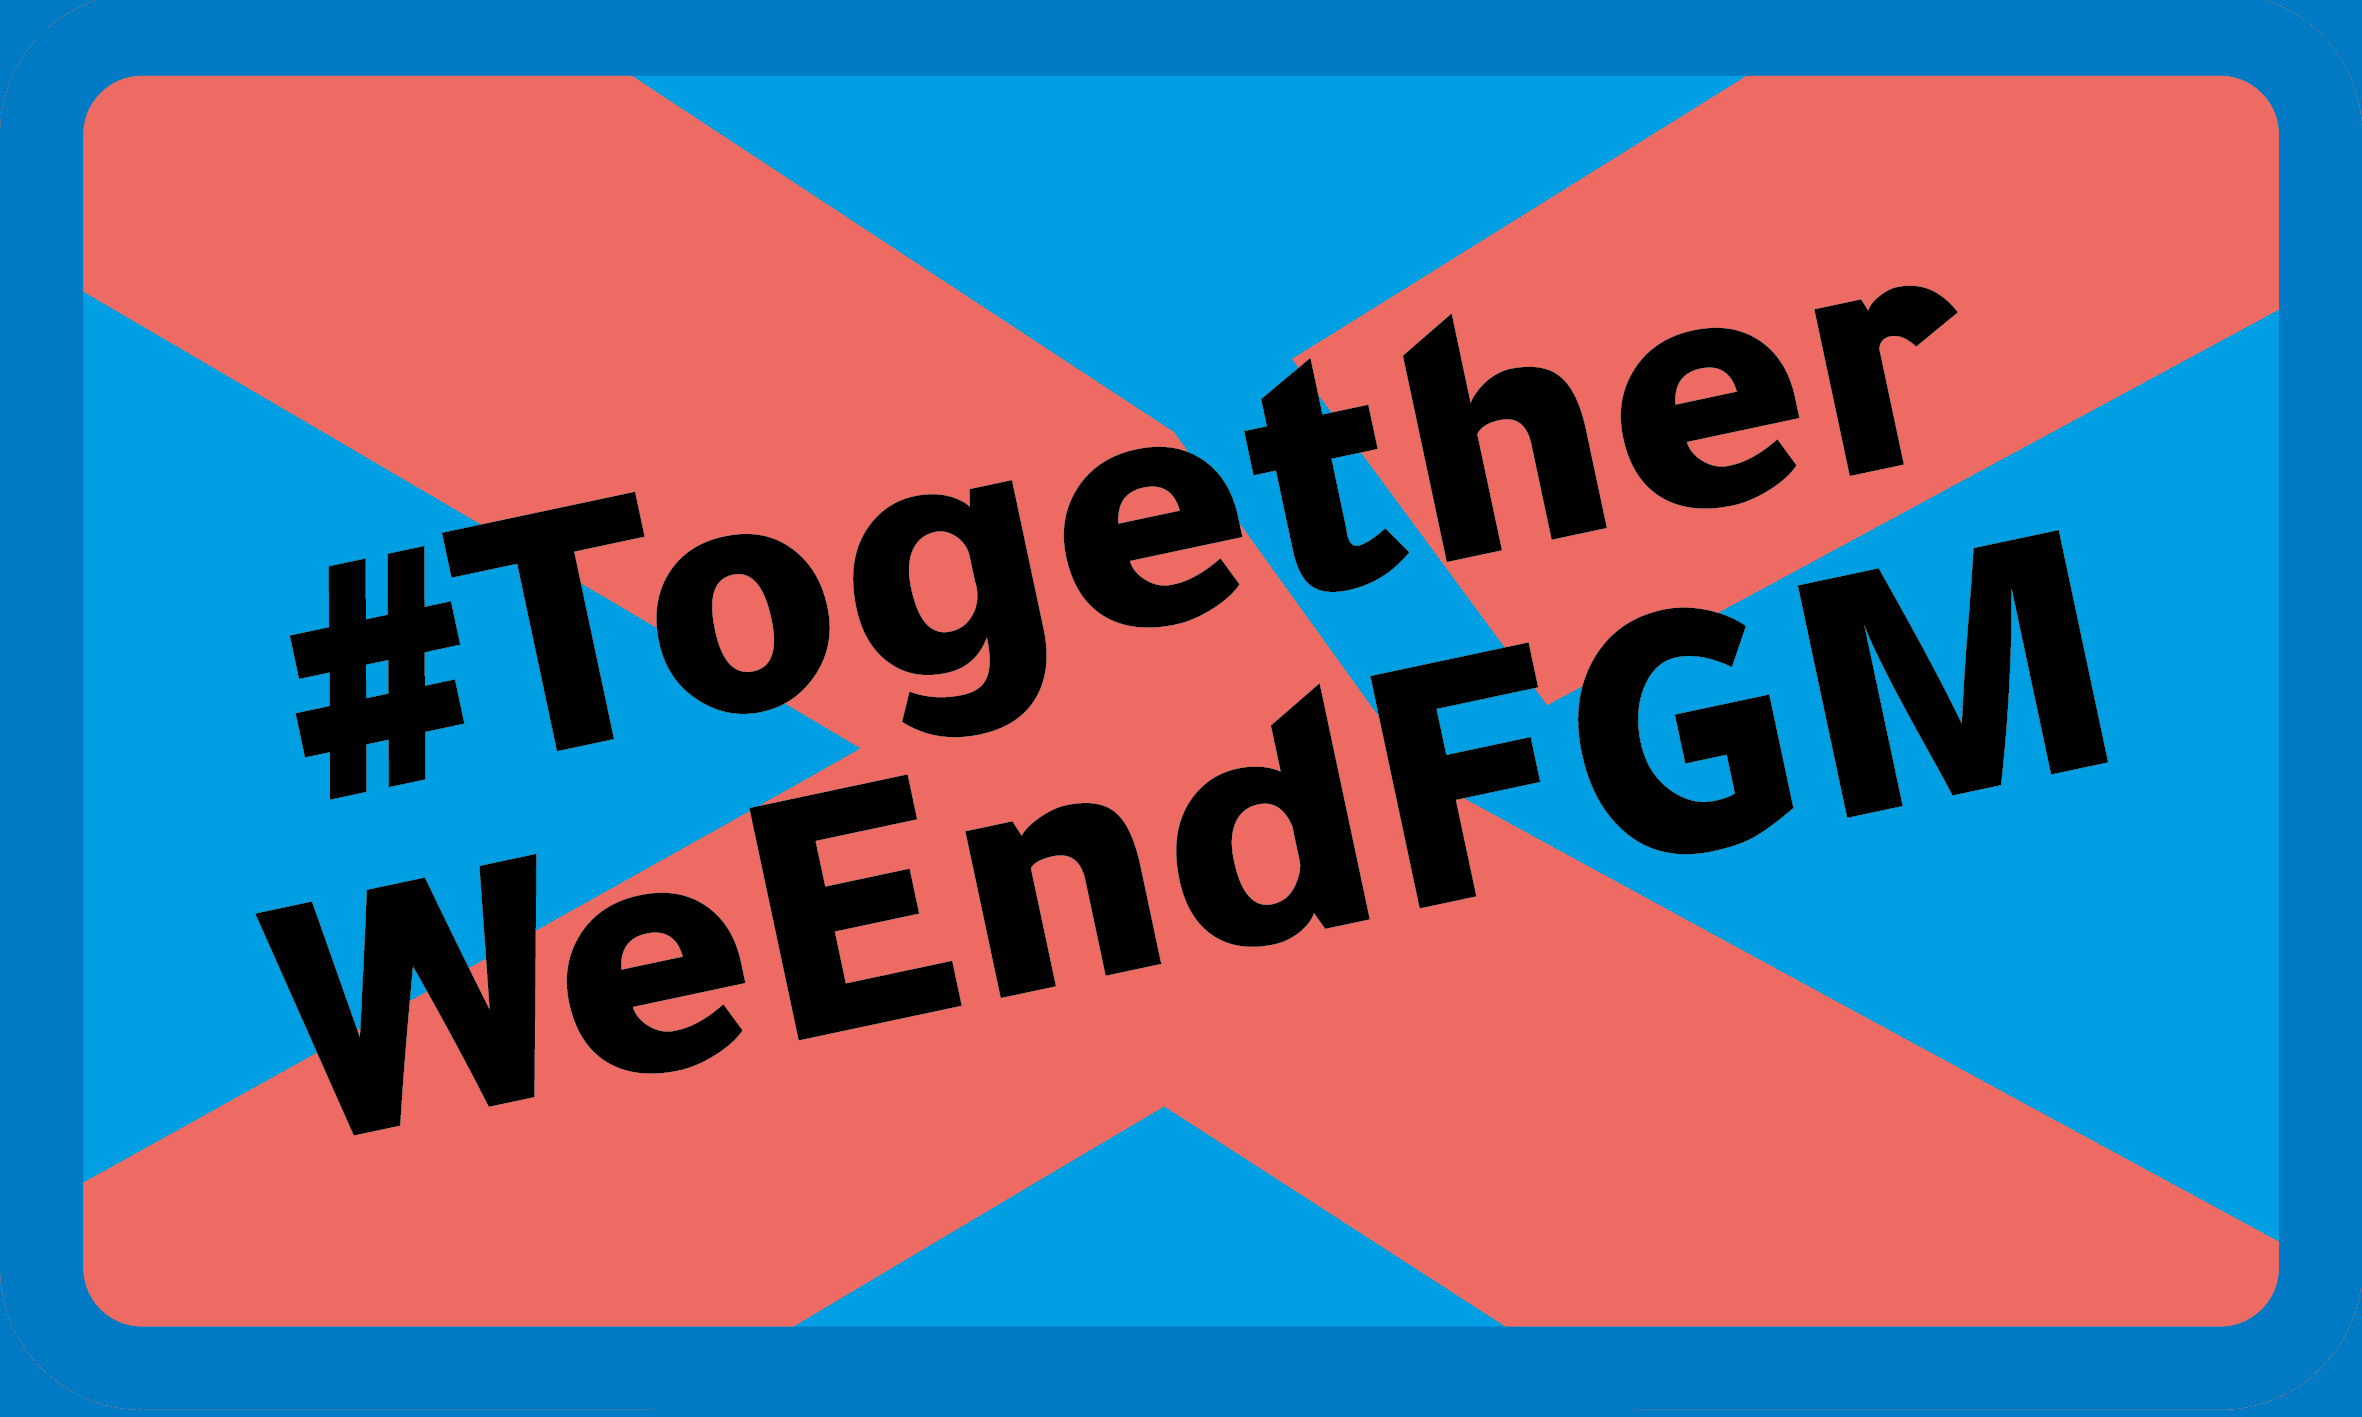 Logo #TogetherWeEndFGM